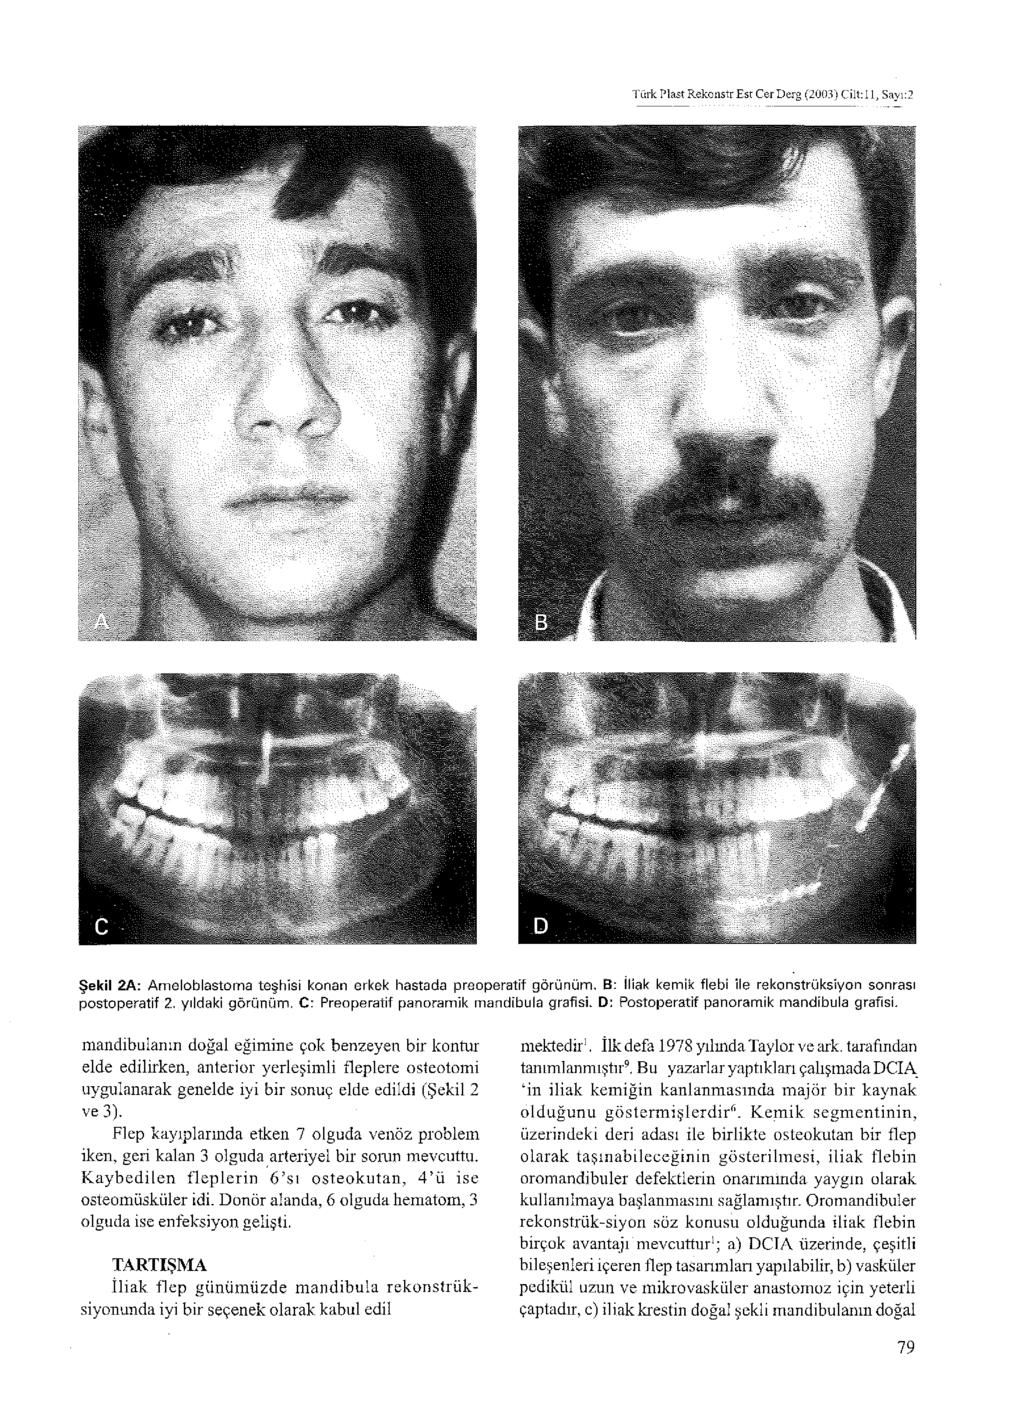 Türk Plast Rekoııstr Est Cer Derg (2003) Cilt: 11, Sayı:2 Şekil 2A: Ameloblastoma teşhisi konan erkek hastada preoperatif görünüm, B: İliak kemik flebi ile rekonstrüksiyon sonrası postoperatif 2,